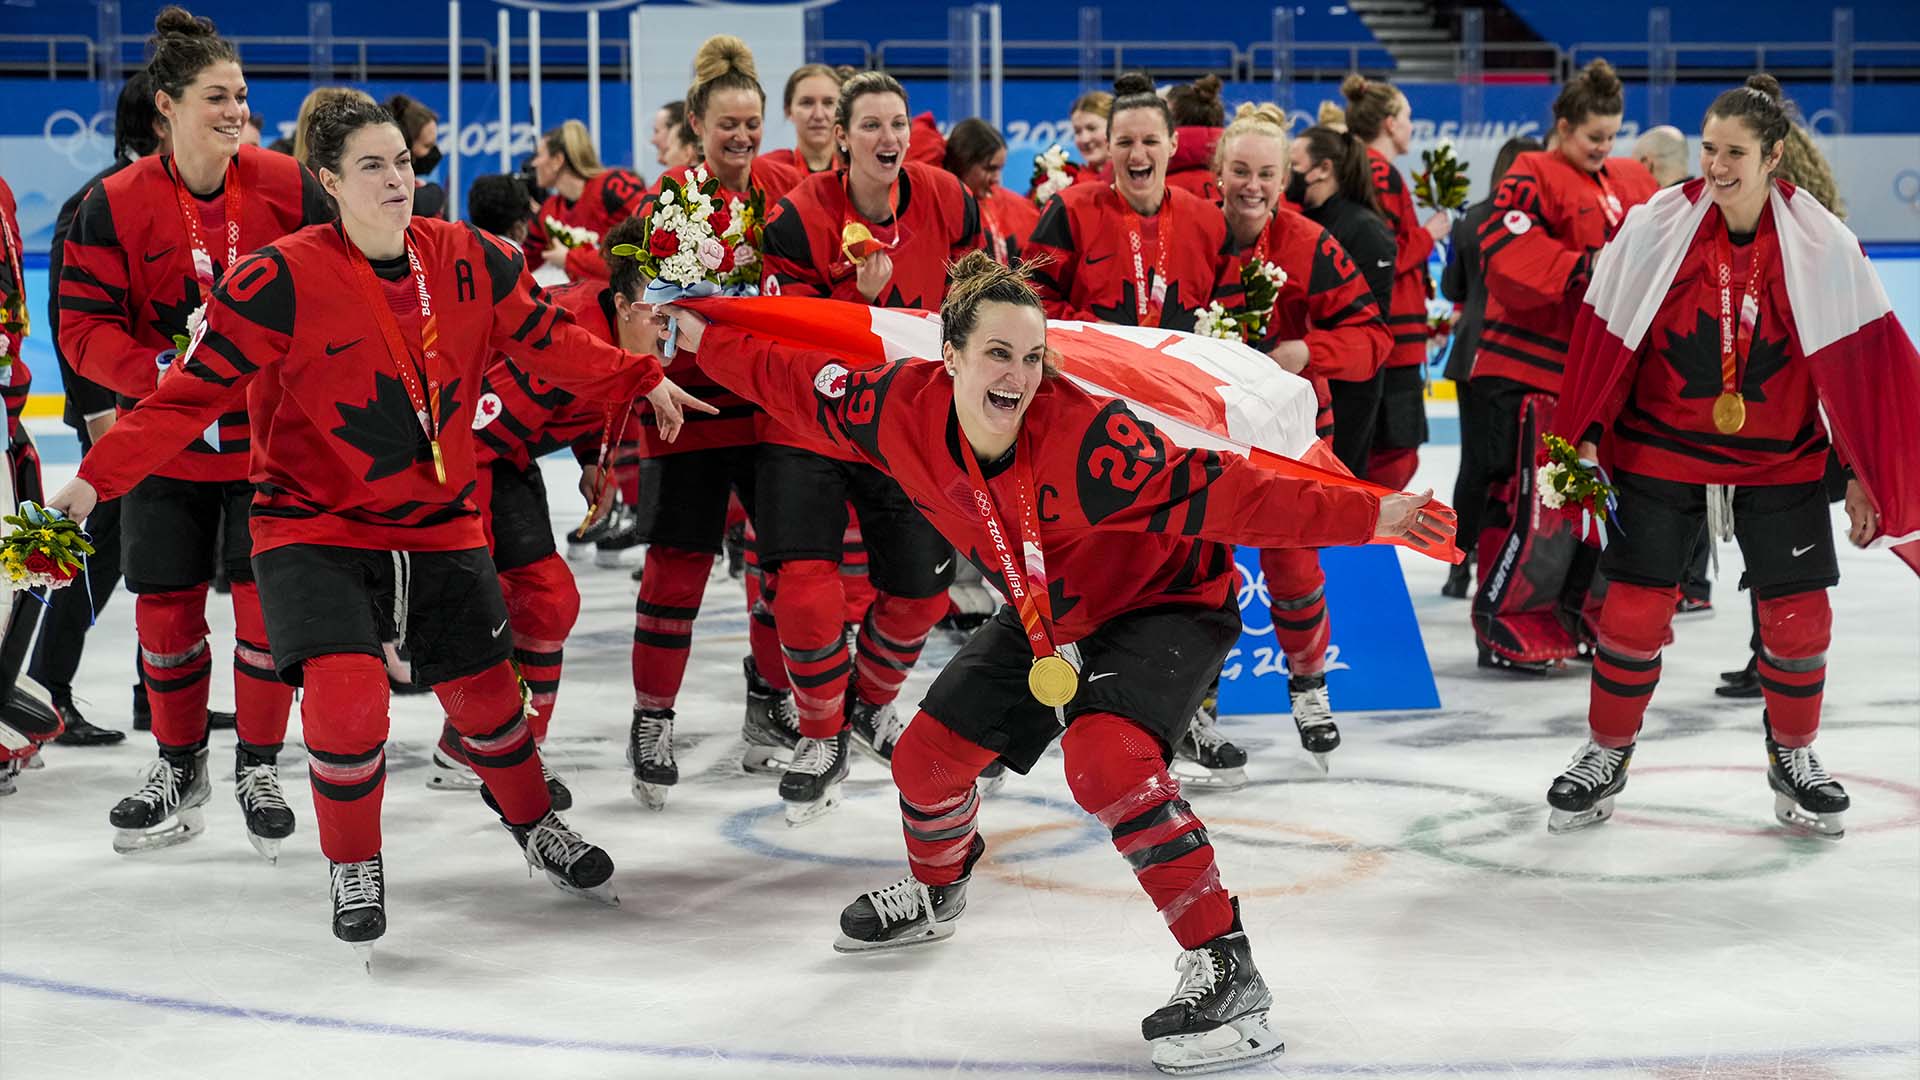 L'équipe canadienne célèbre sa médaille d'or après avoir battu les États-Unis d'Amérique lors de la finale de hockey féminin lors des Jeux olympiques d'hiver de Beijing 2022 à Beijing, en Chine, le jeudi 17 février 2022.